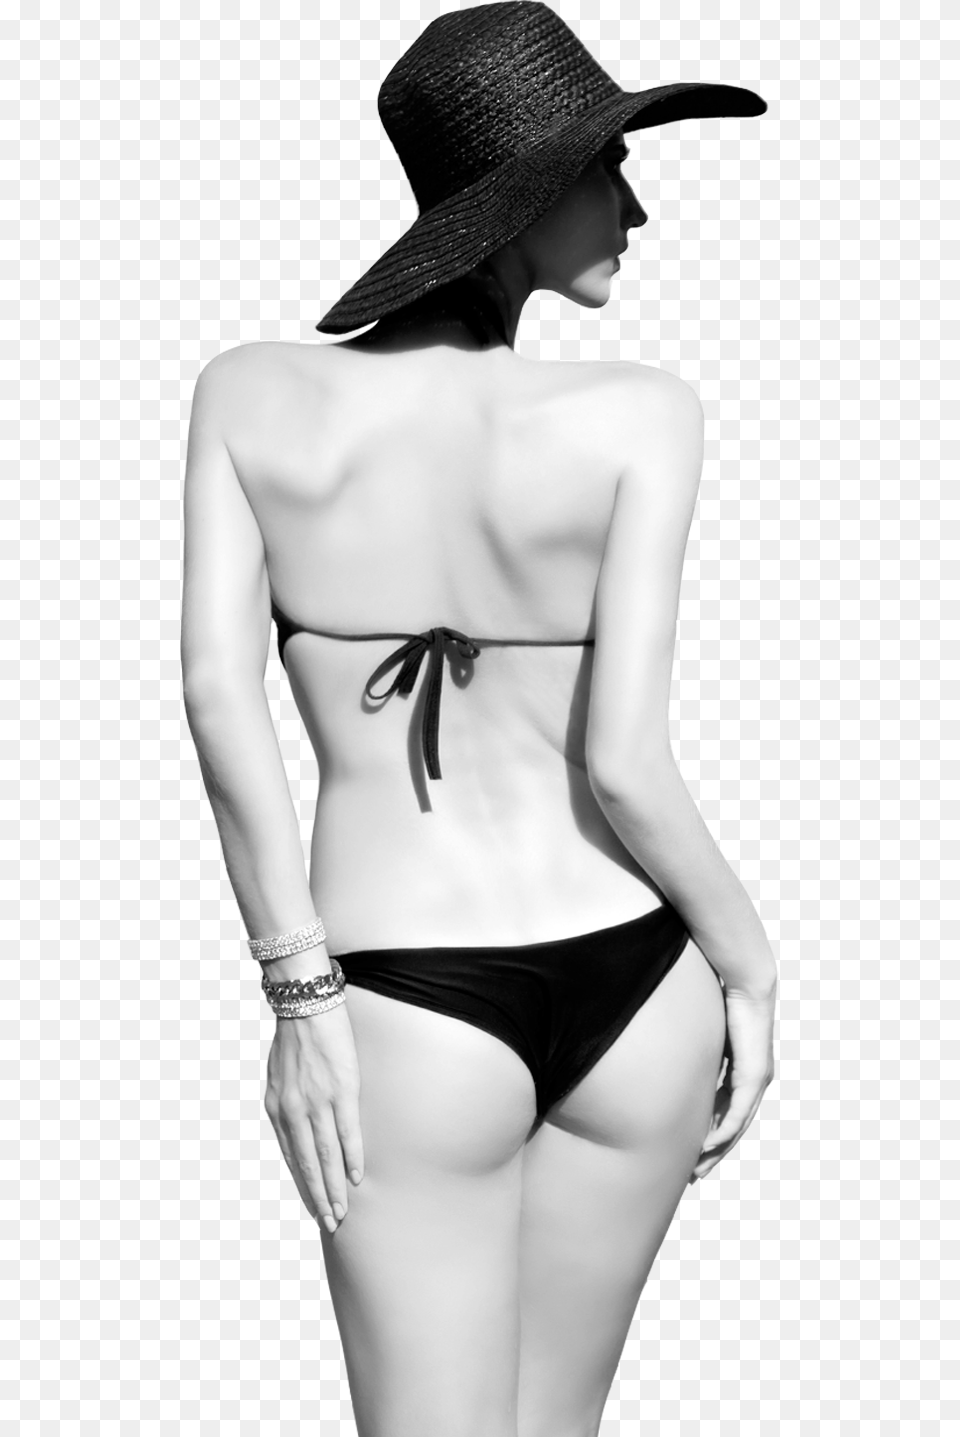 Bikini Girl, Adult, Swimwear, Sun Hat, Person Png